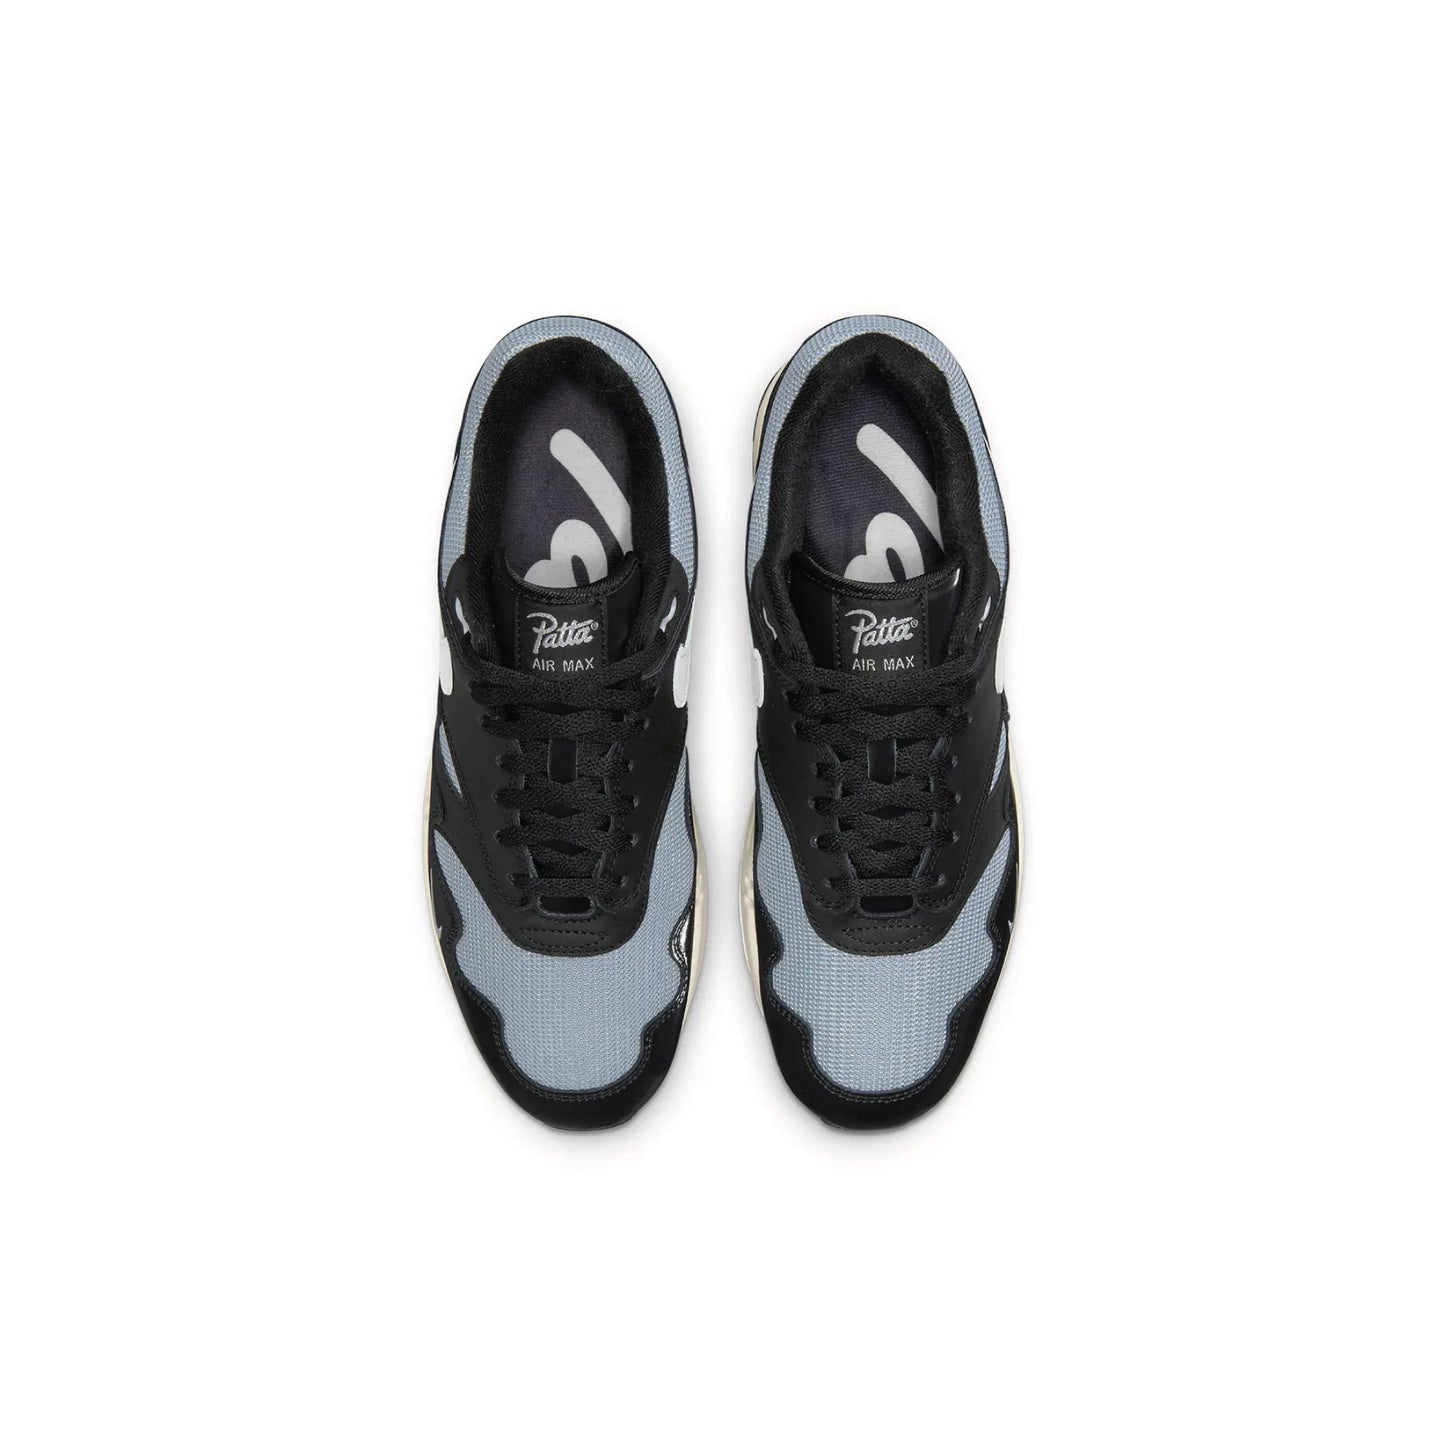 Patta x Nike Air Max 1 Waves Black